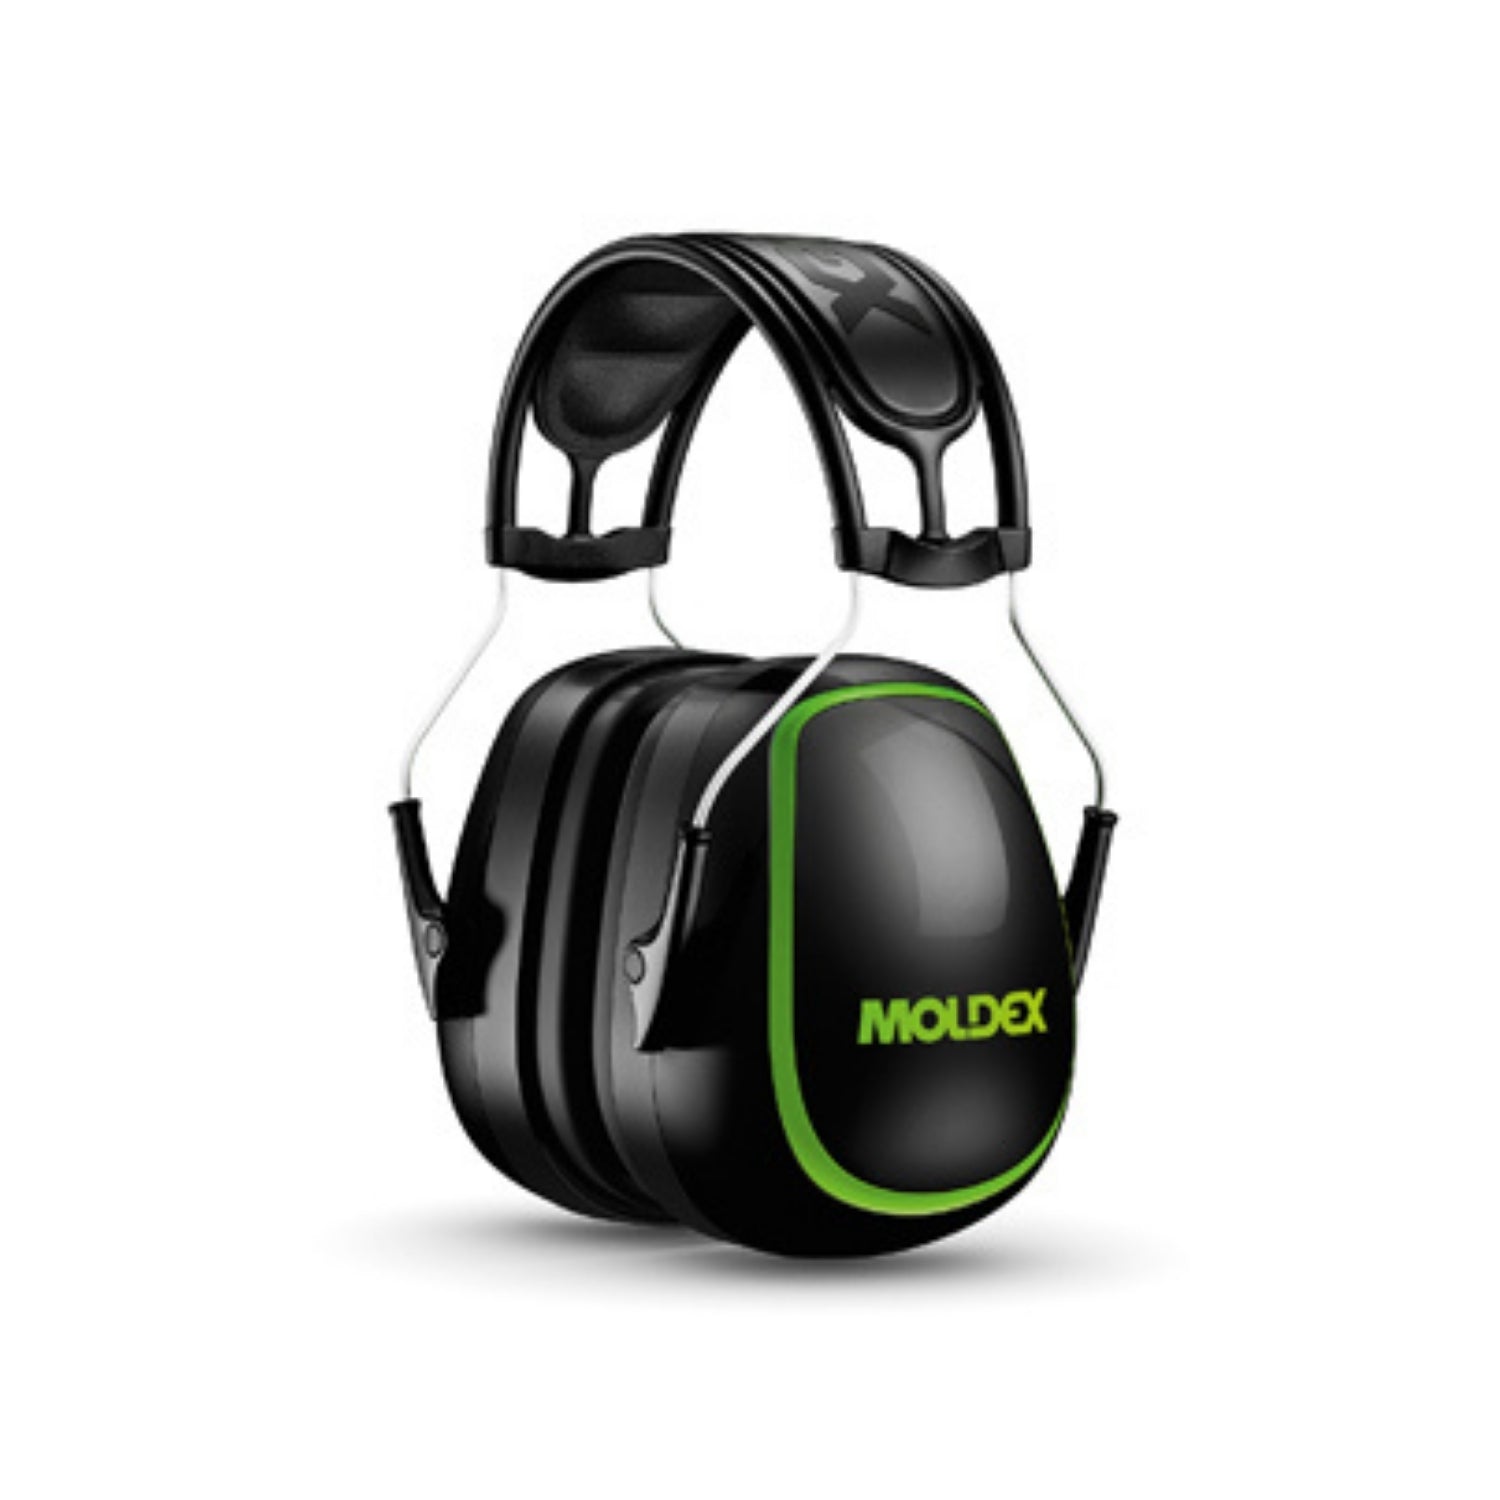 MOLDEX 6130- MX Series Earmuffs, 30 dB, Black/Green, Headband